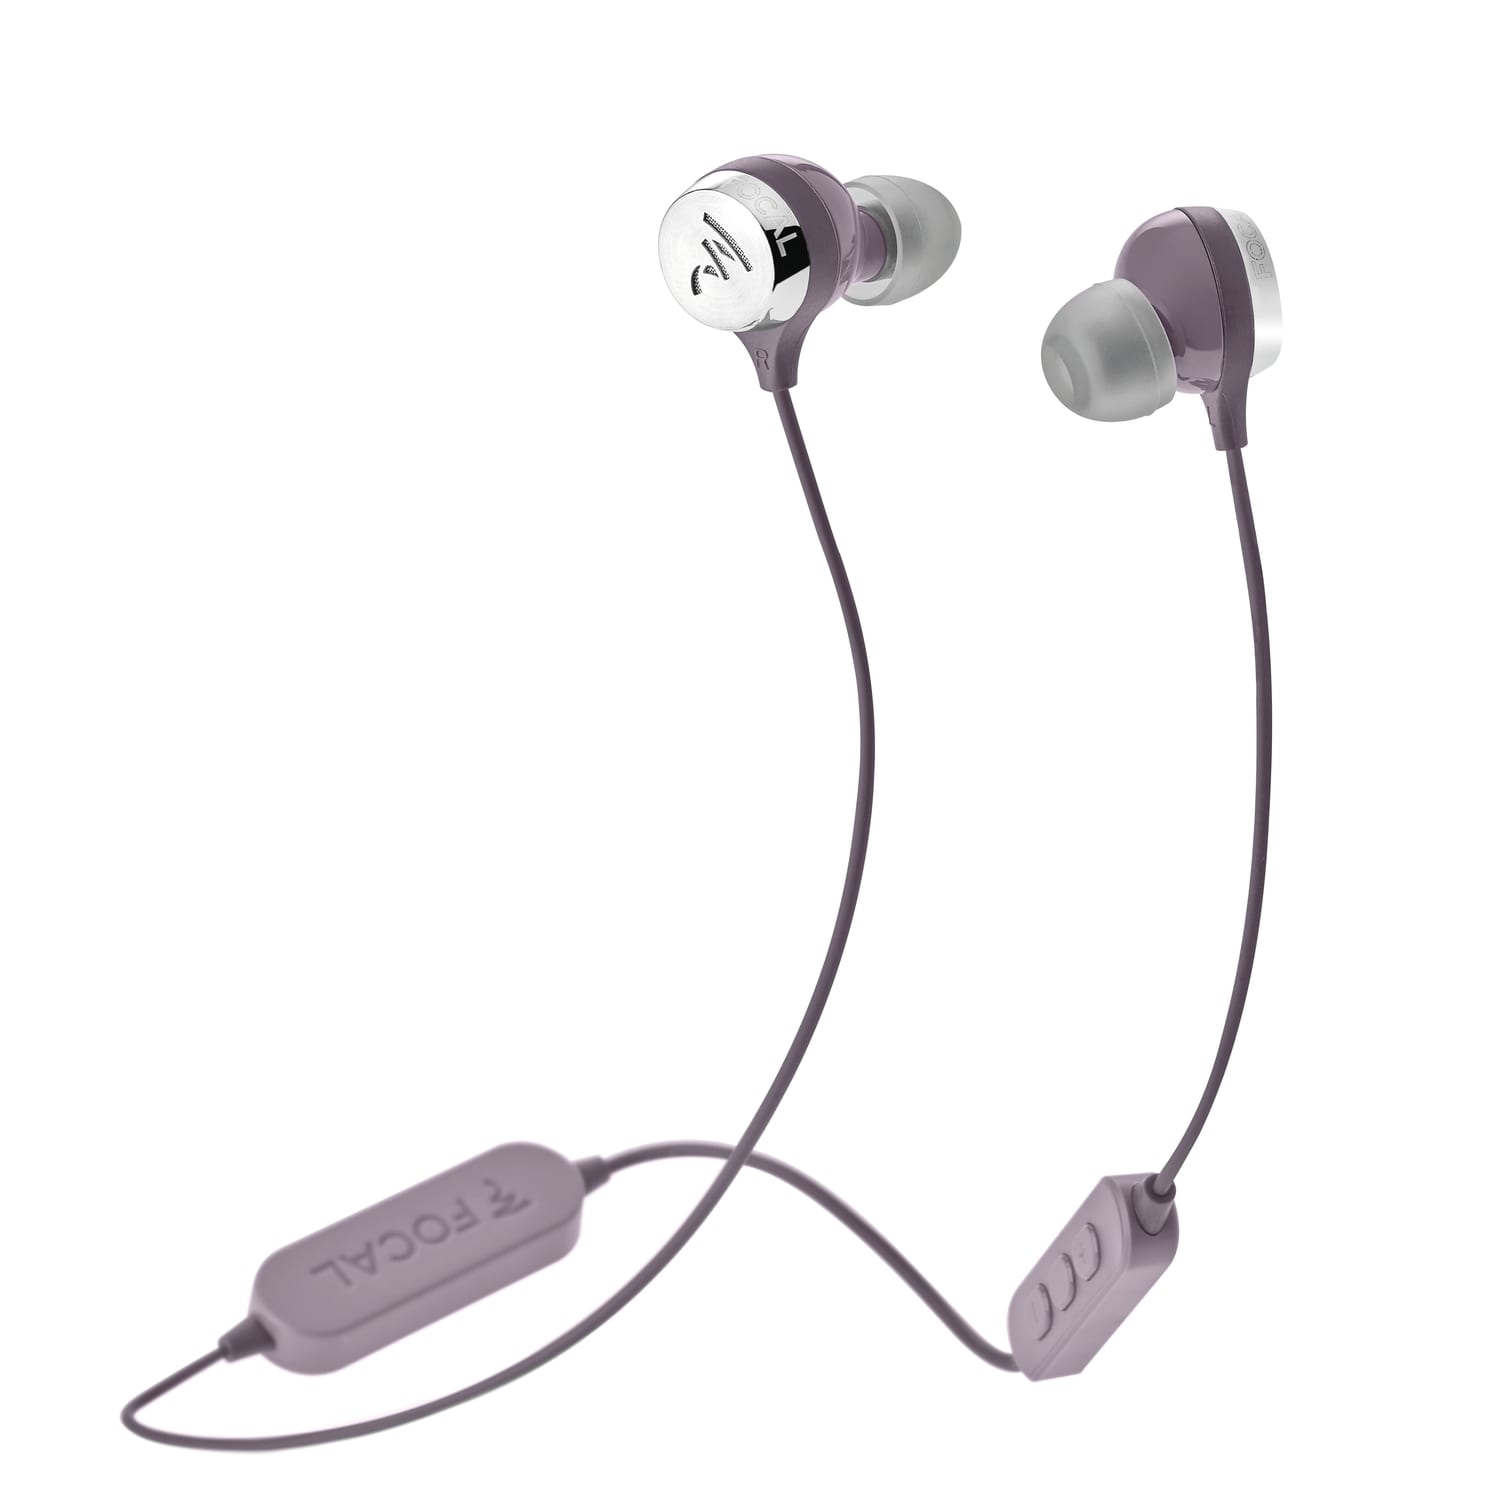 Focal Sphear Wireless paars - In ear oordopjes